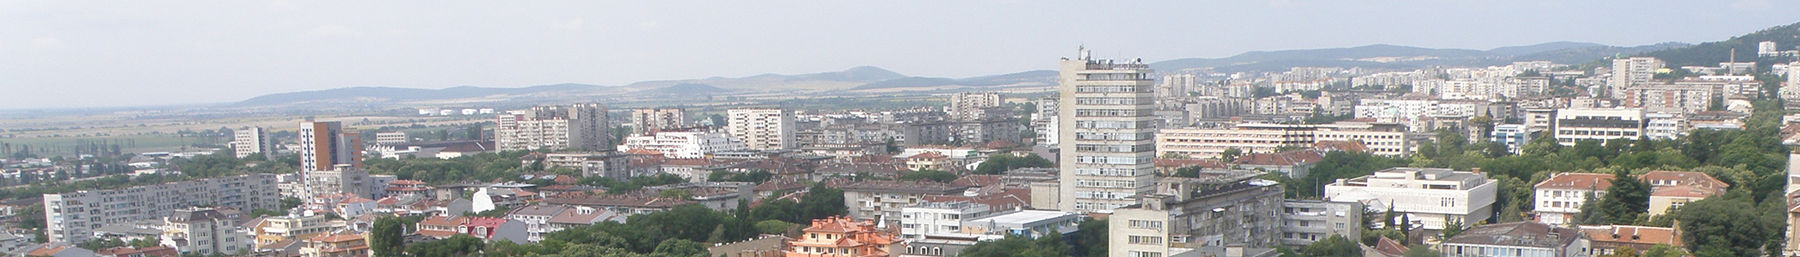 Stara Zagora banner.jpg